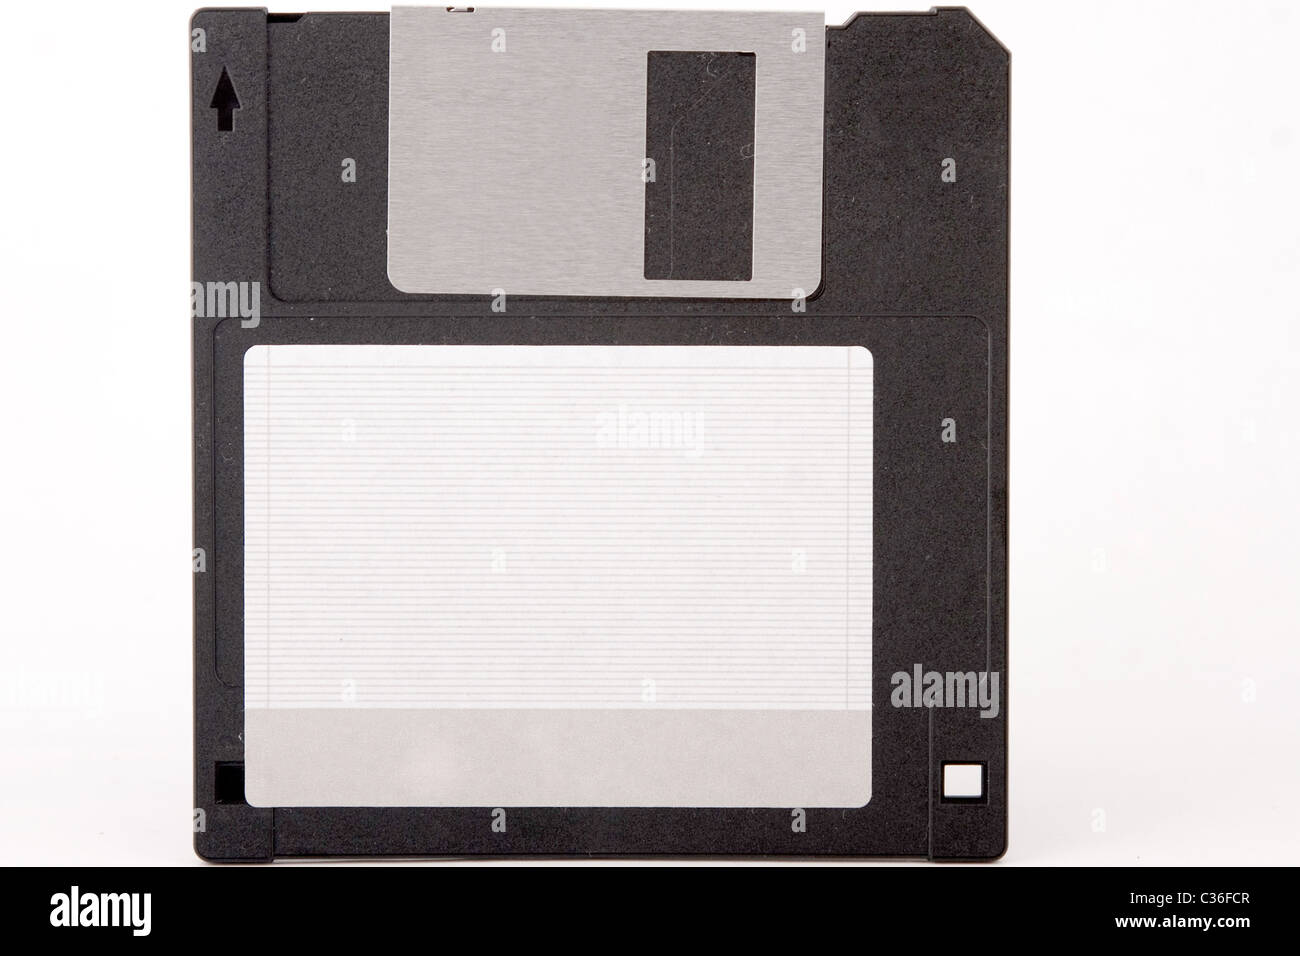 Vista frontale delle unità obsolete floppy disk su sfondo bianco Foto Stock